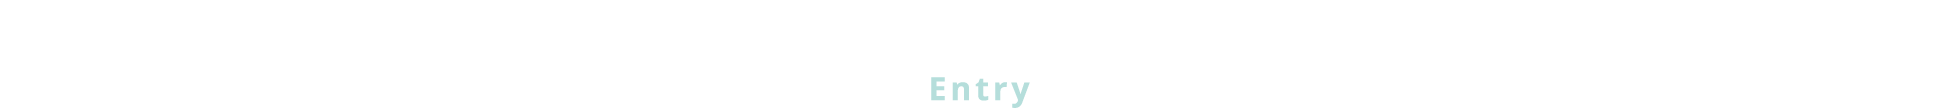 応募フォーム / Entry